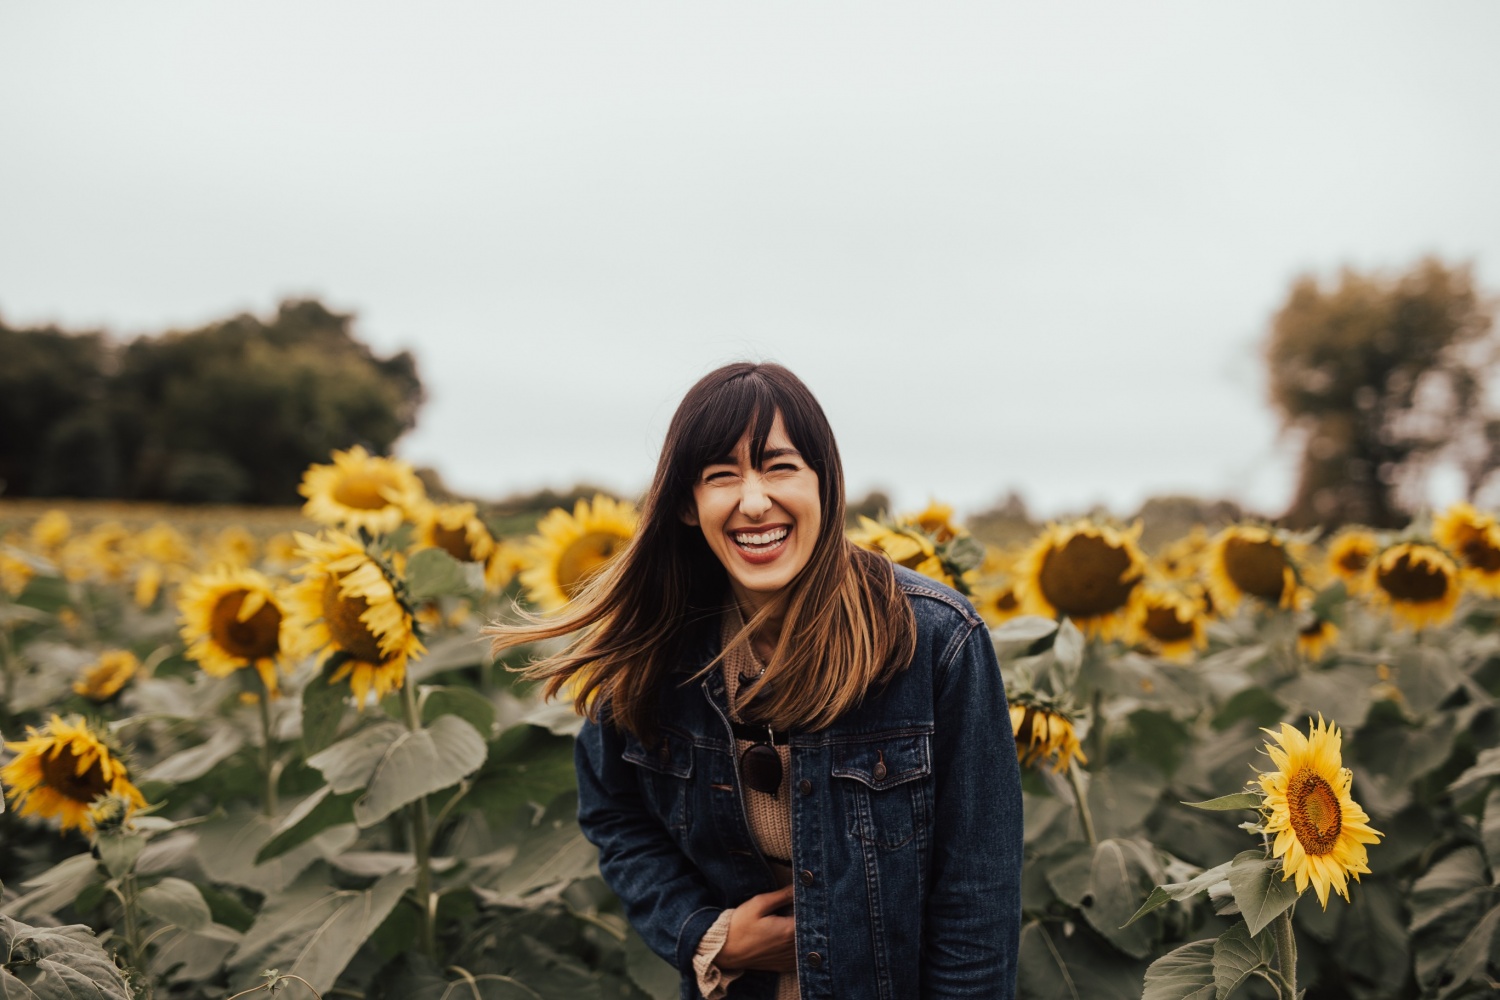 Girl smiling in sunflower field